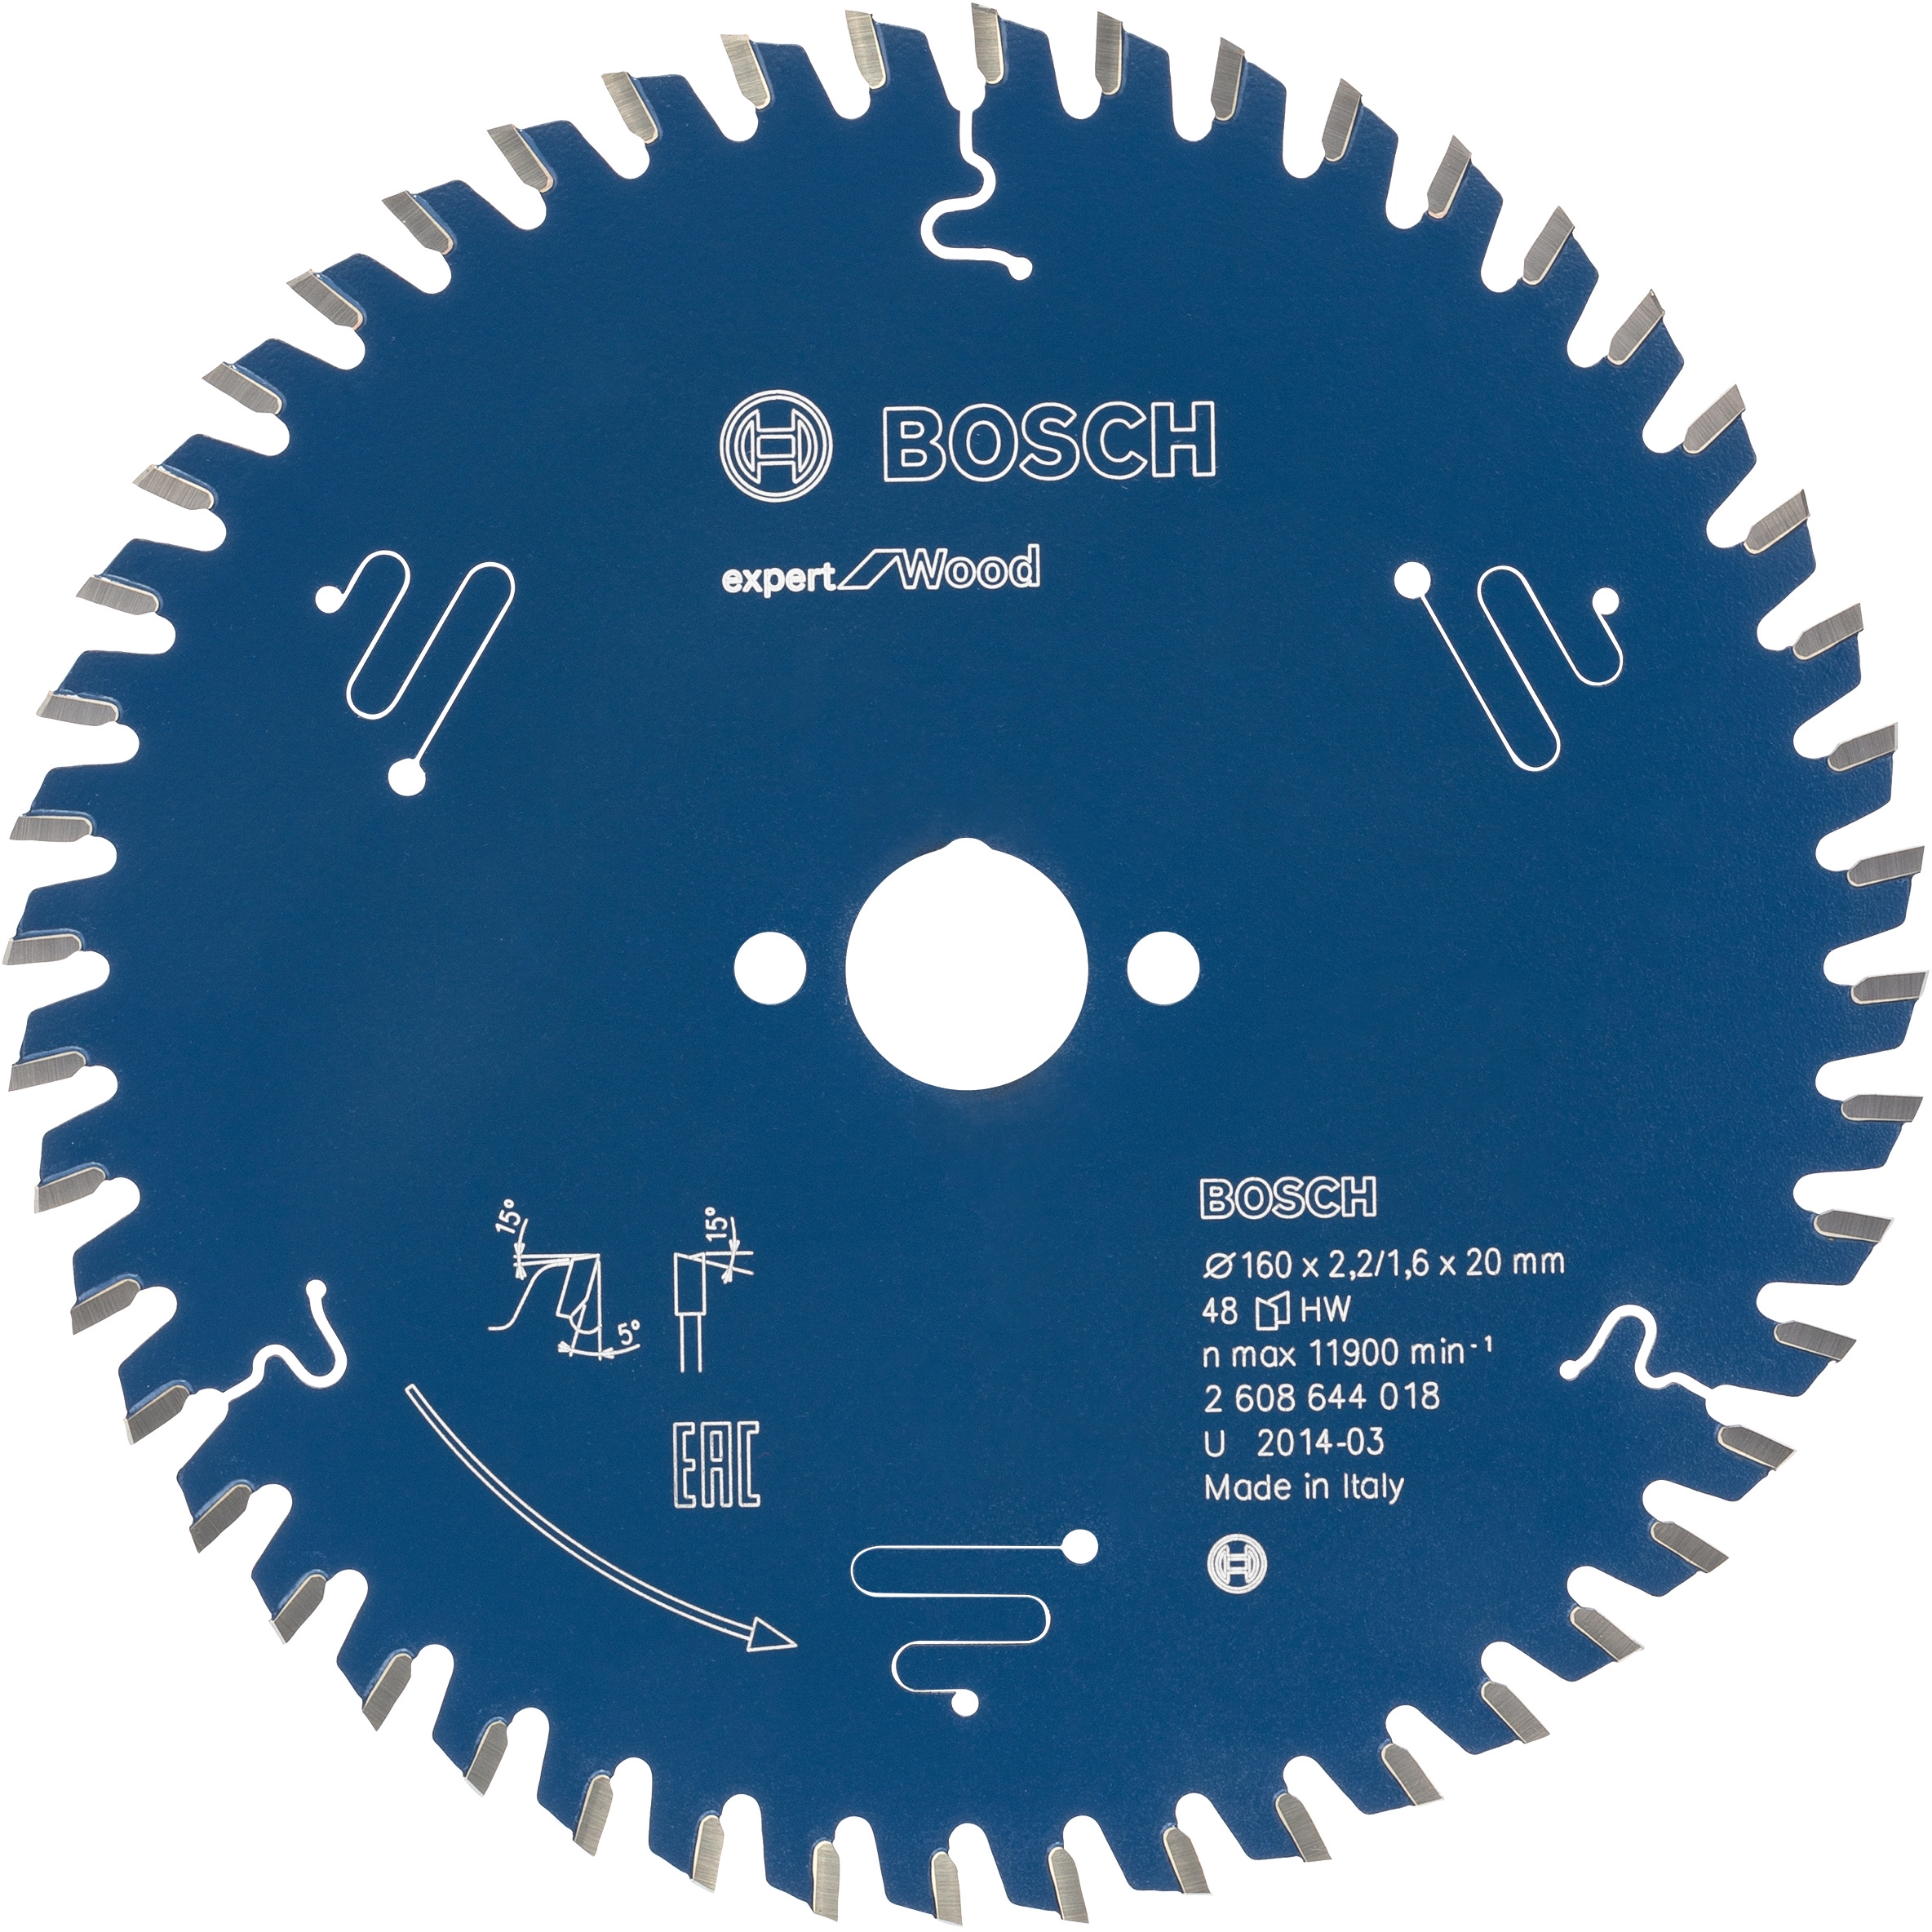 Bosch Kreissägeblatt Expert for mm bei Wood OBI 160 2,2 mm 20 mm kaufen x x